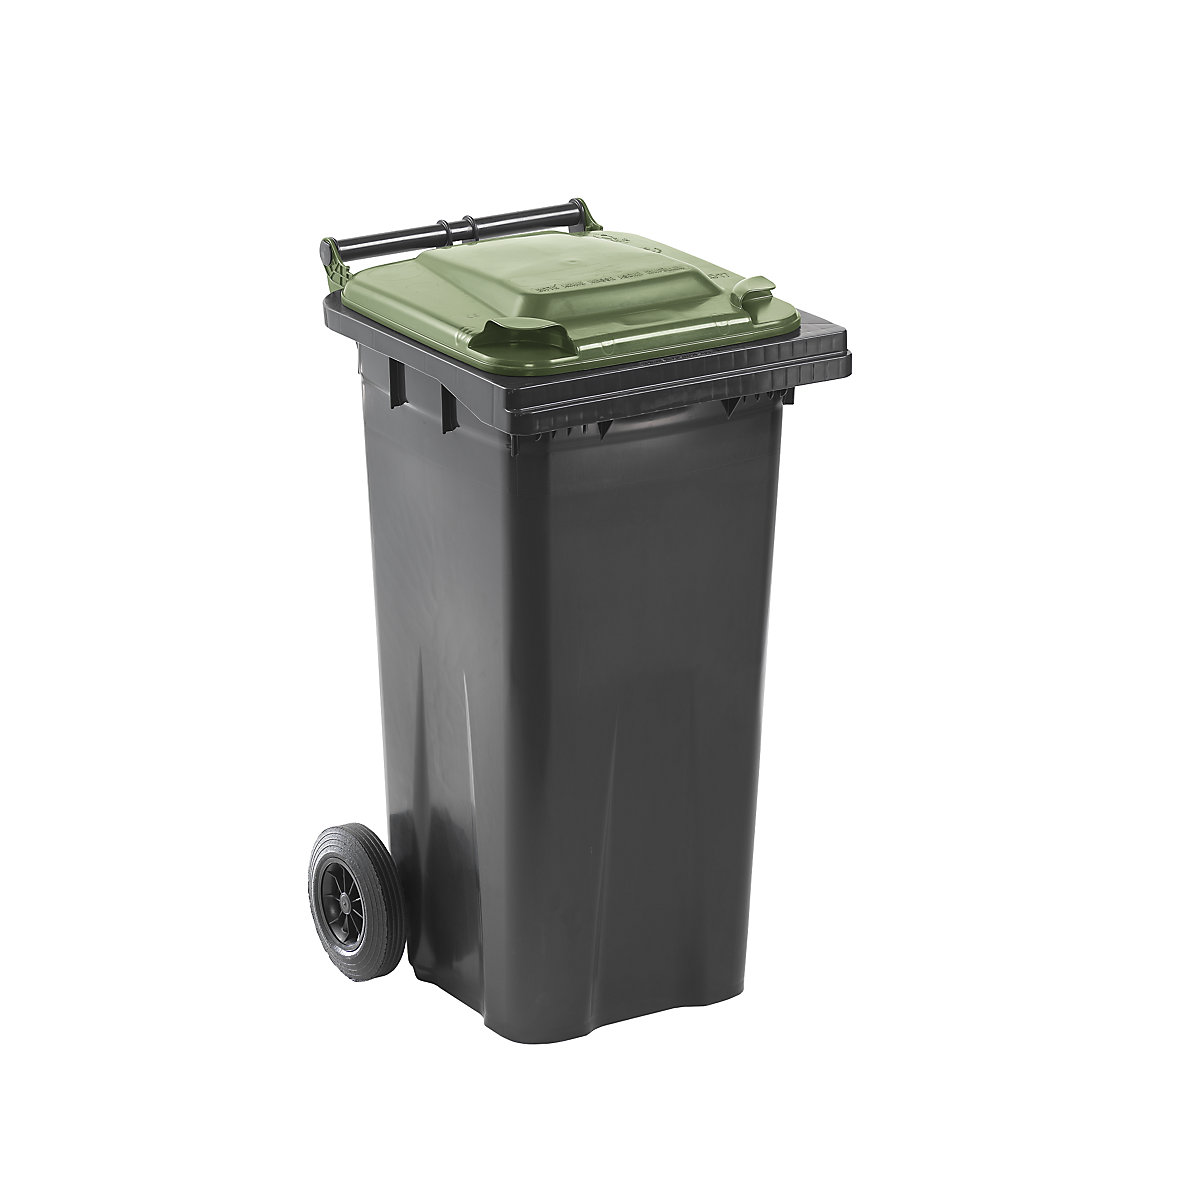 DIN EN 840 szabvány szerinti hulladékgyűjtő, űrtartalom 120 l, szé x ma x mé 505 x 1005 x 555 mm, antracit színben, zöld fedéllel